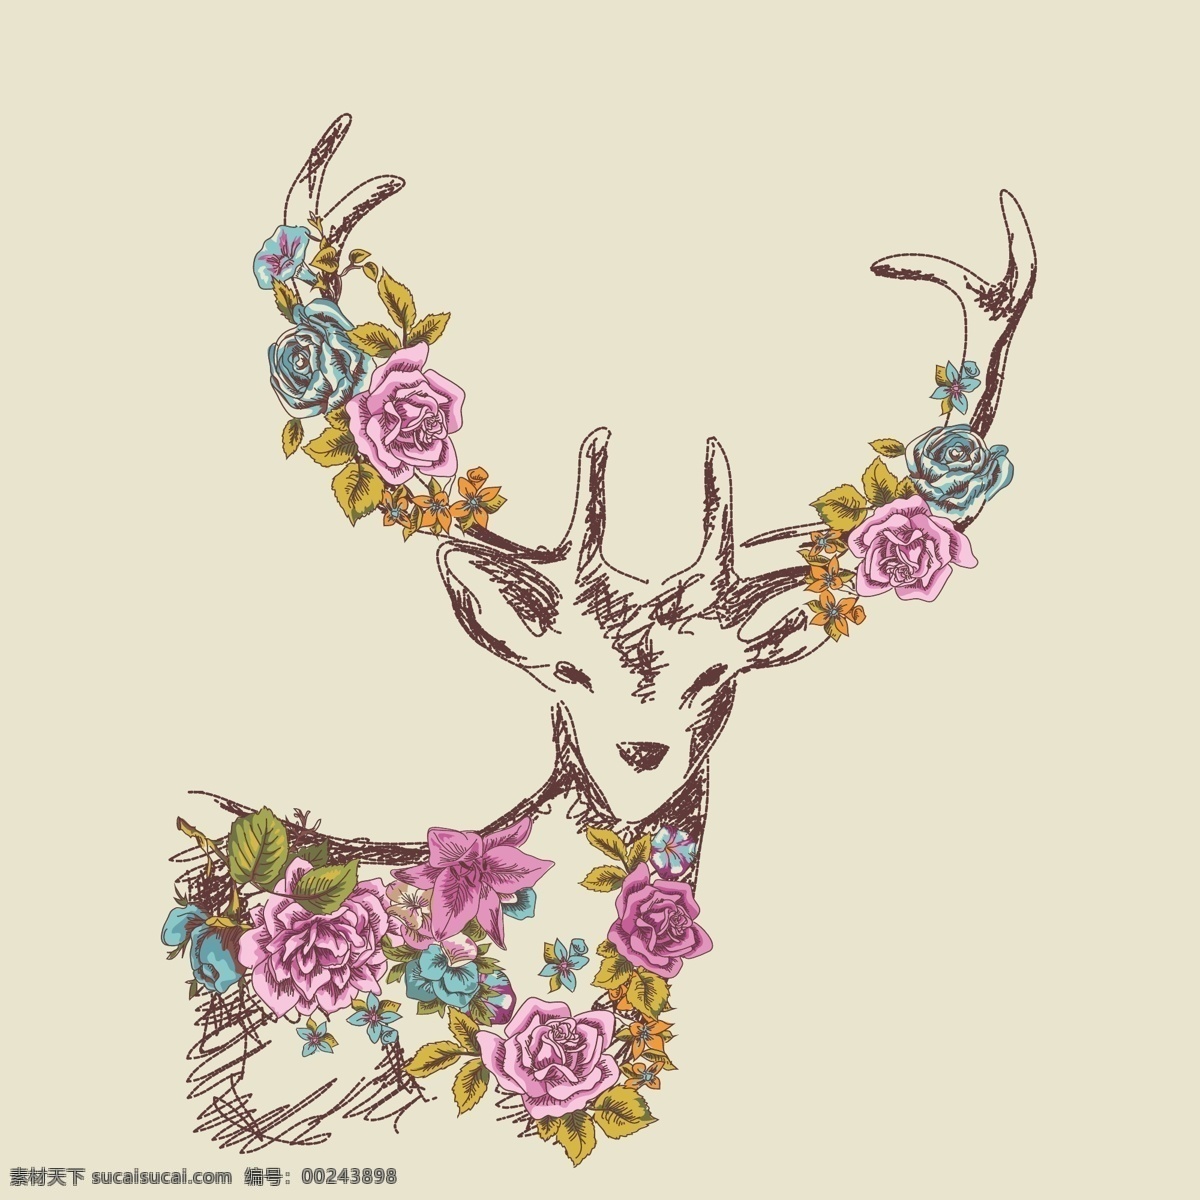 繁花与麋鹿 圣诞节 麋鹿 创意设计 矢量素材 背景 圣诞 英文 几何麋鹿 繁花